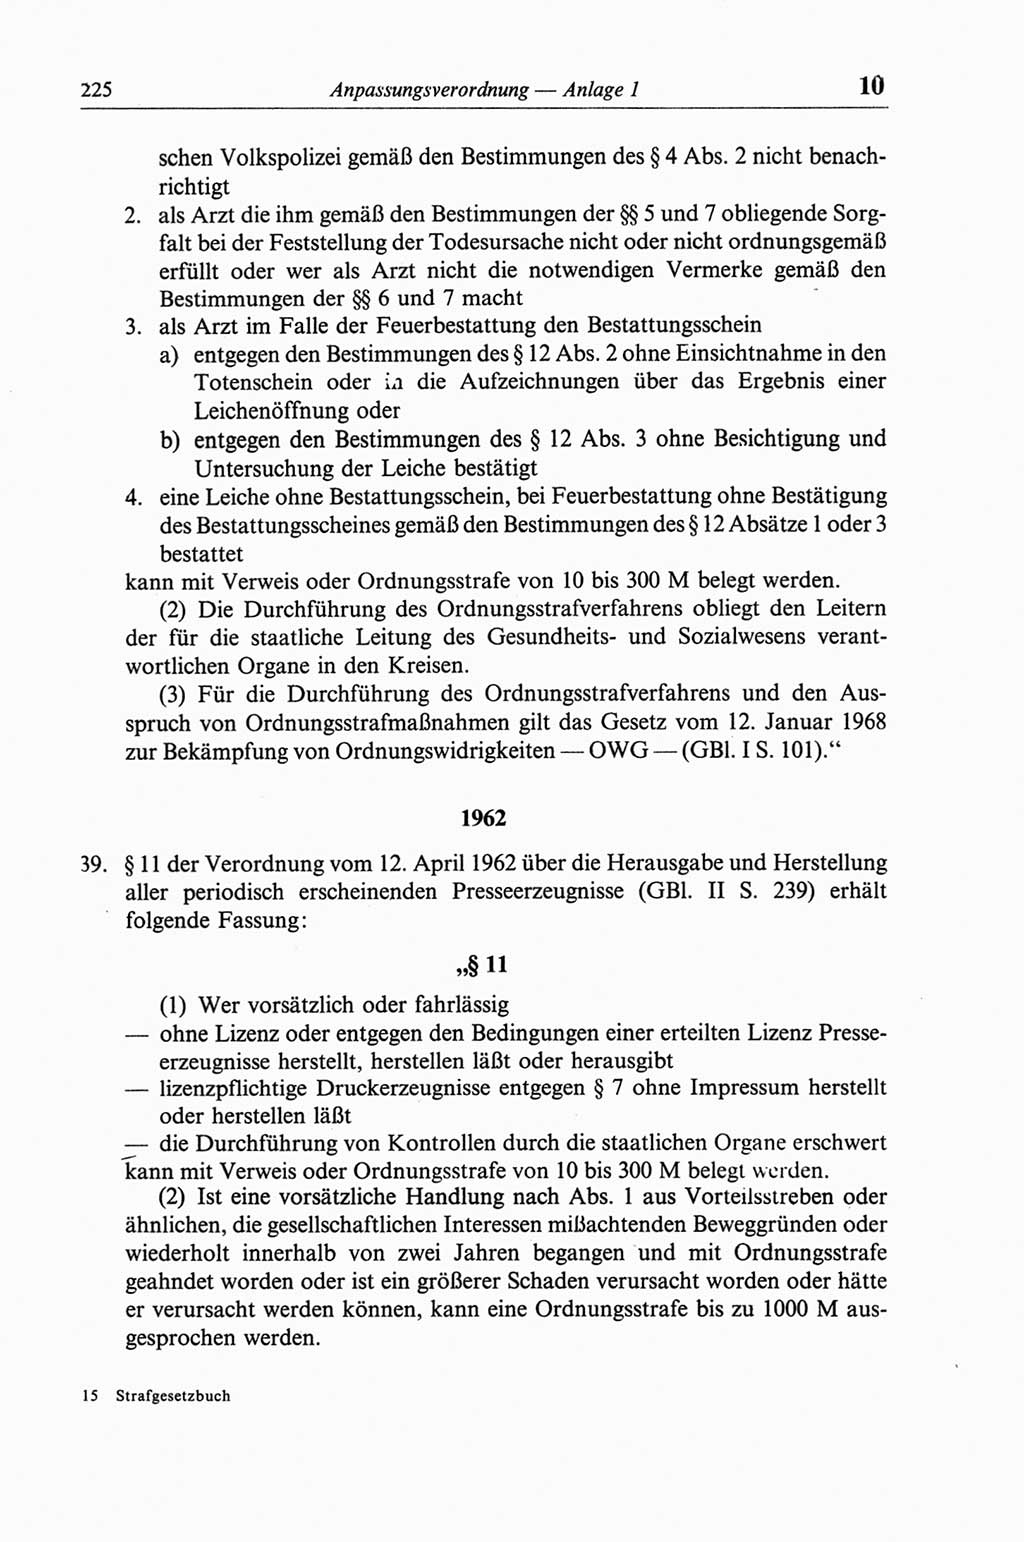 Strafgesetzbuch (StGB) der Deutschen Demokratischen Republik (DDR) und angrenzende Gesetze und Bestimmungen 1968, Seite 225 (StGB Ges. Best. DDR 1968, S. 225)